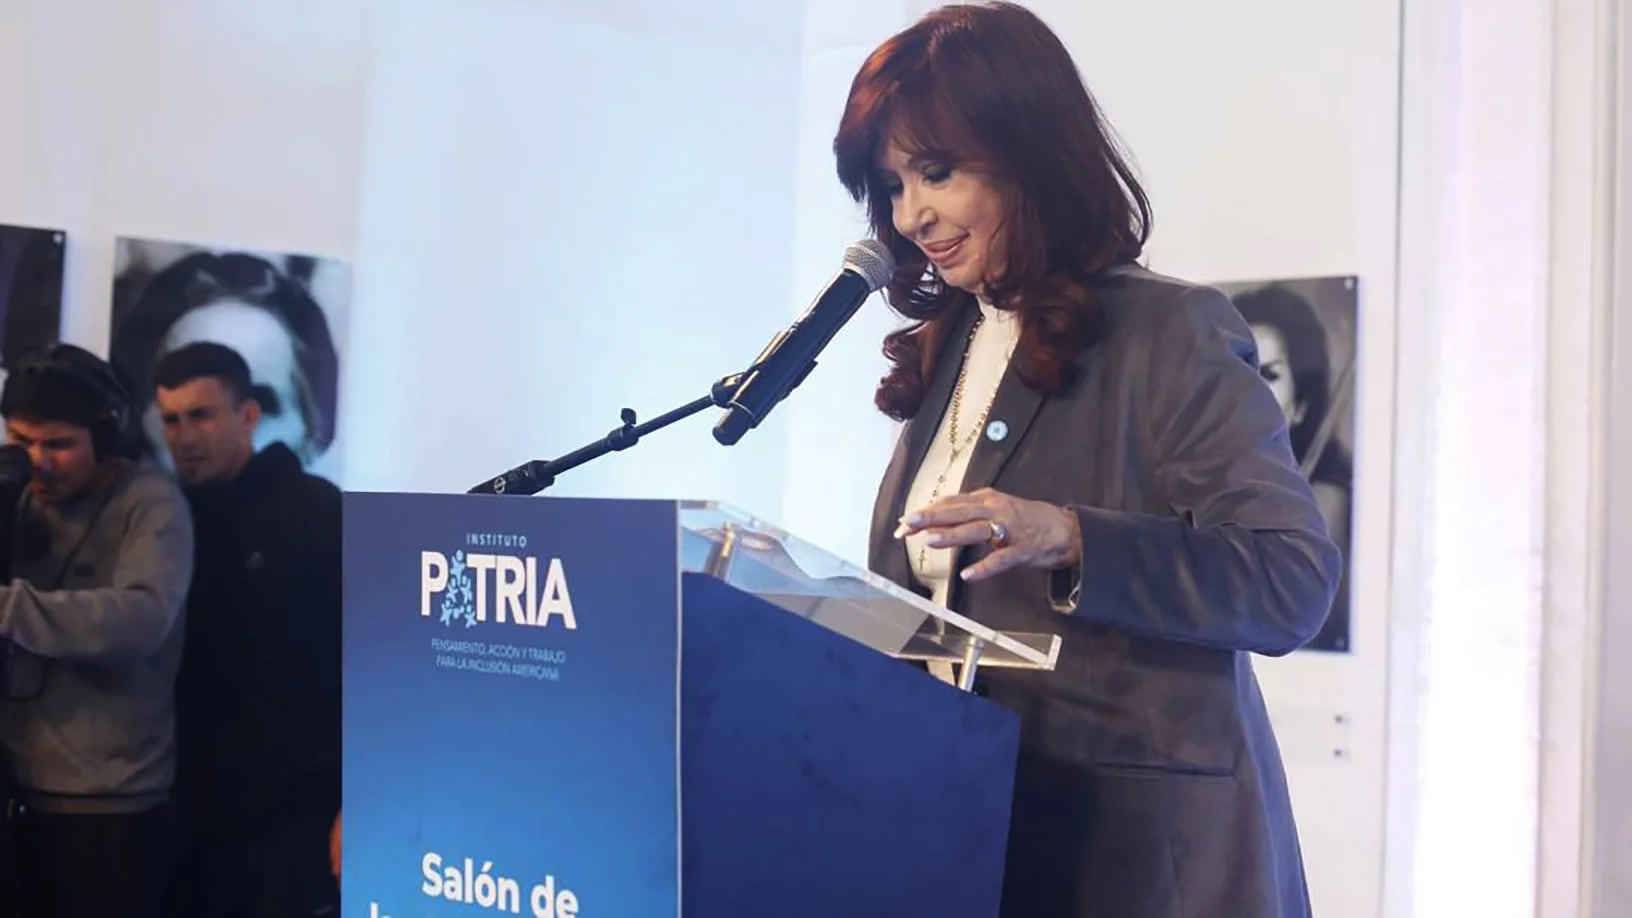 Inauguración del Salón de las Mujeres del Bicentenario del Instituto Patria - Cristina Fernández de Kirchner